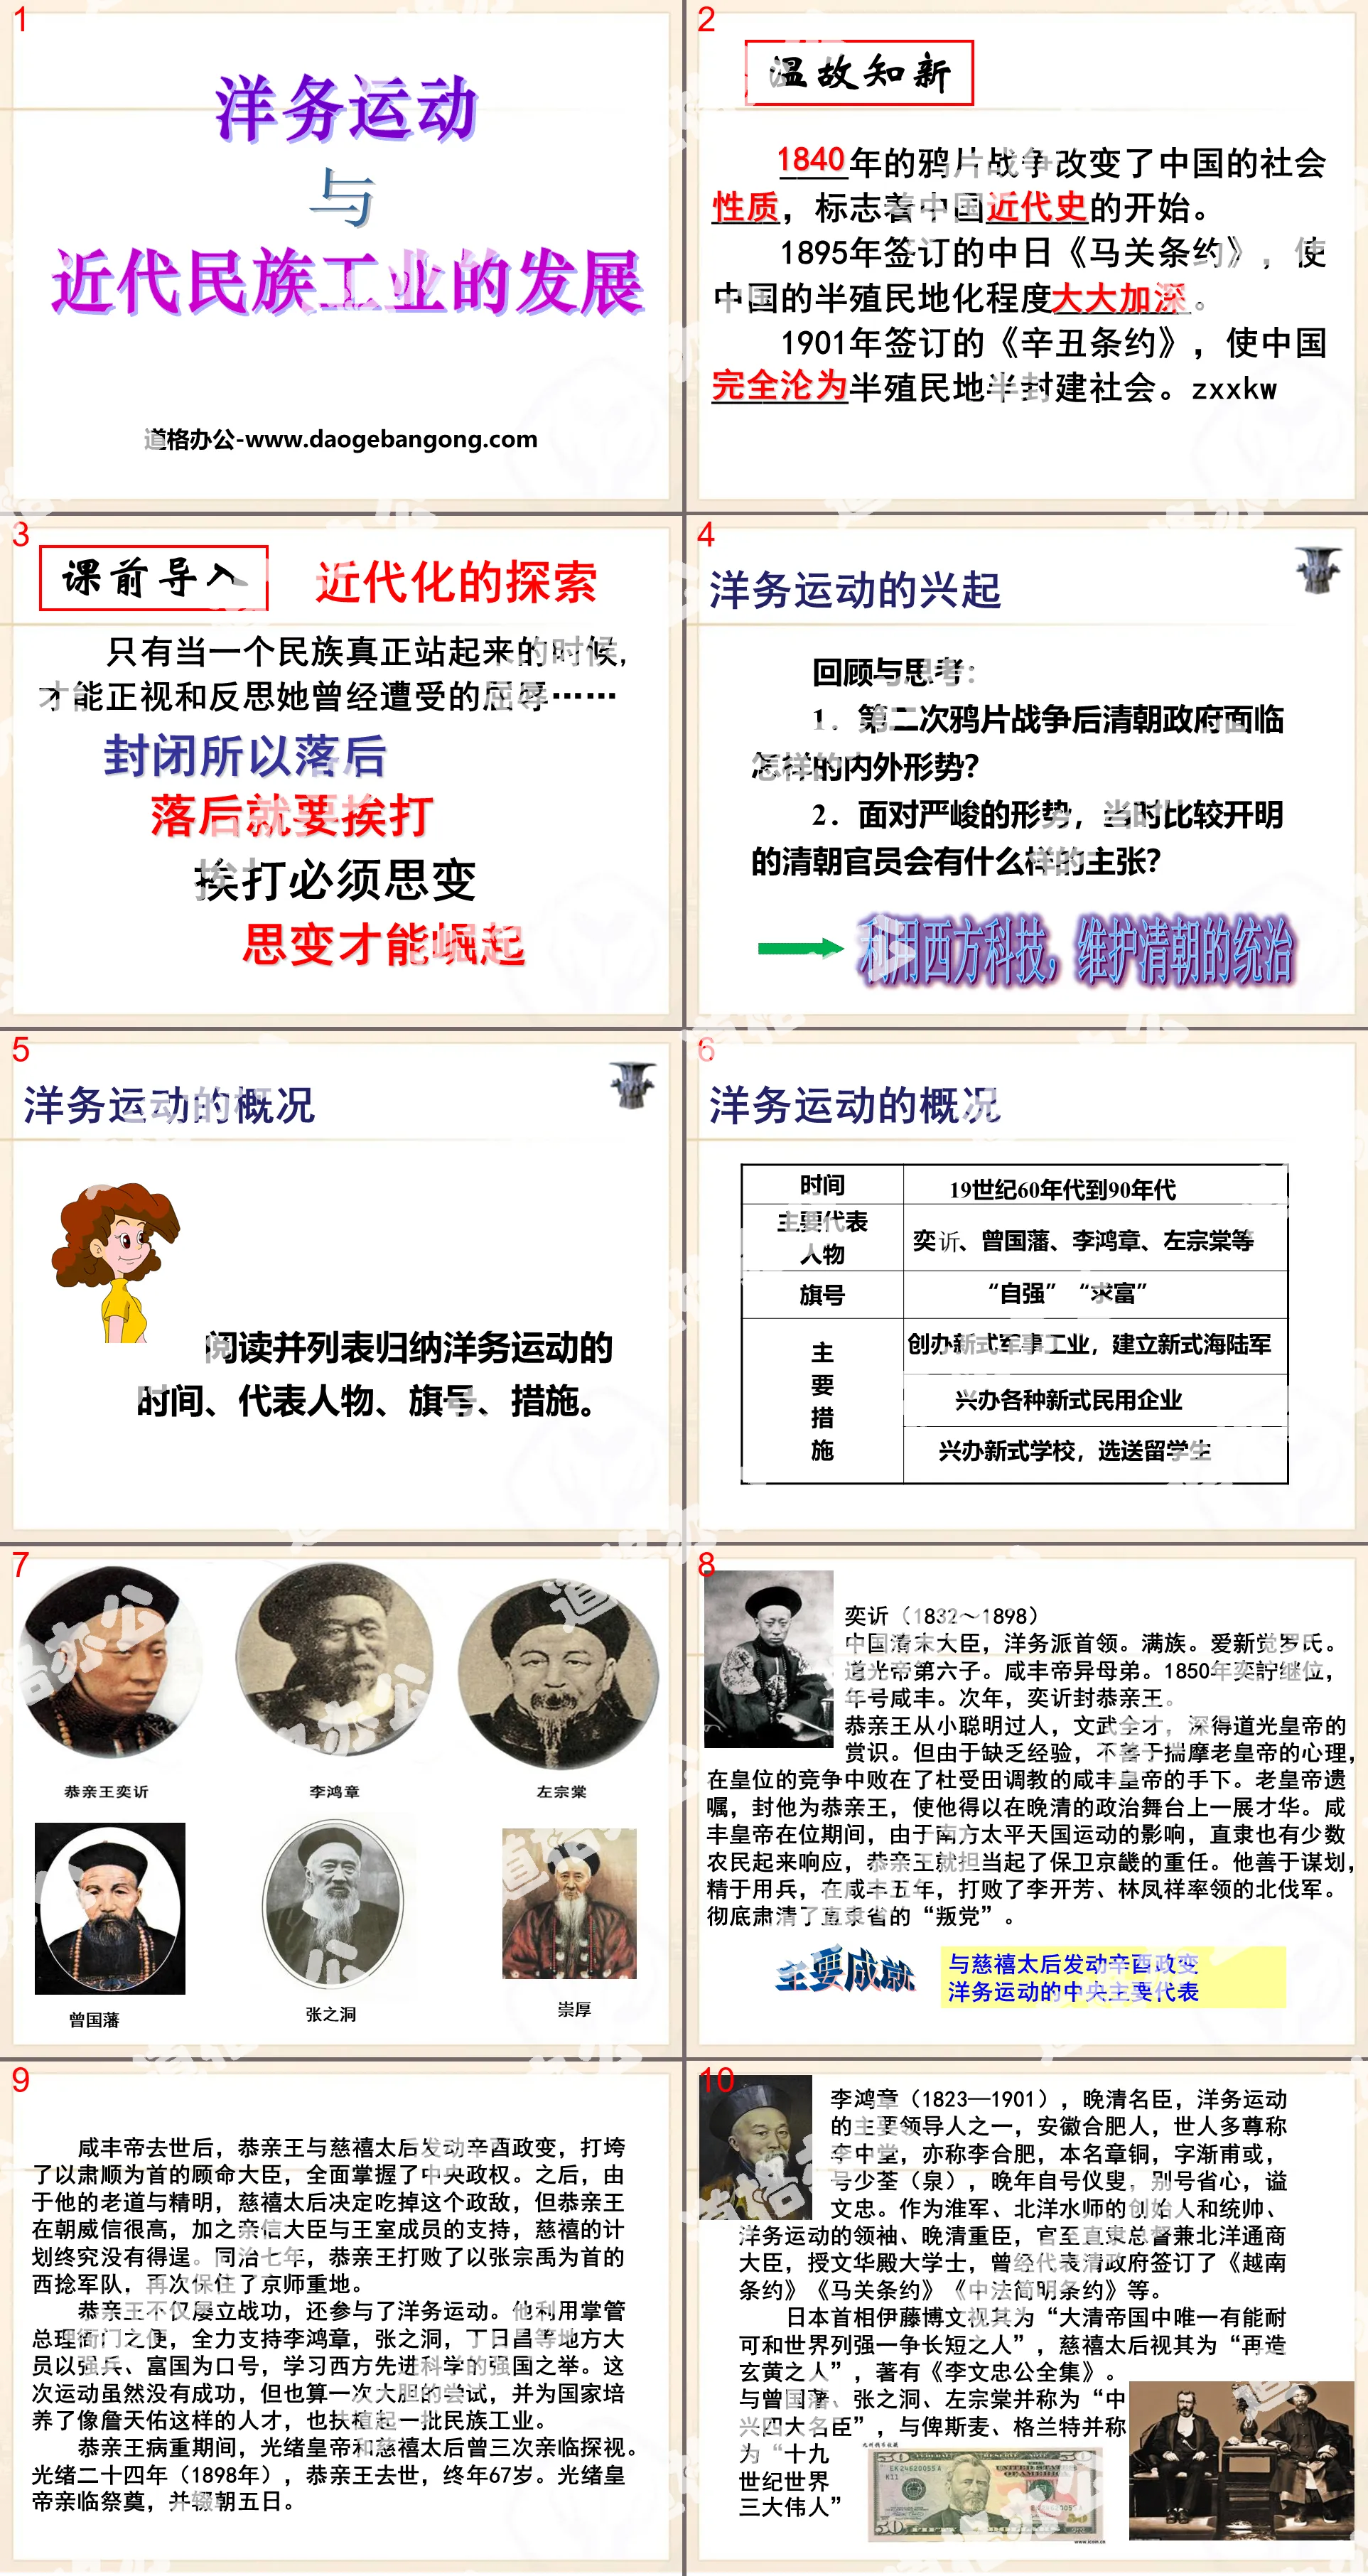 《洋务运动与近代民族工业的发展》19世纪中后期工业文明大潮中的近代中国PPT
